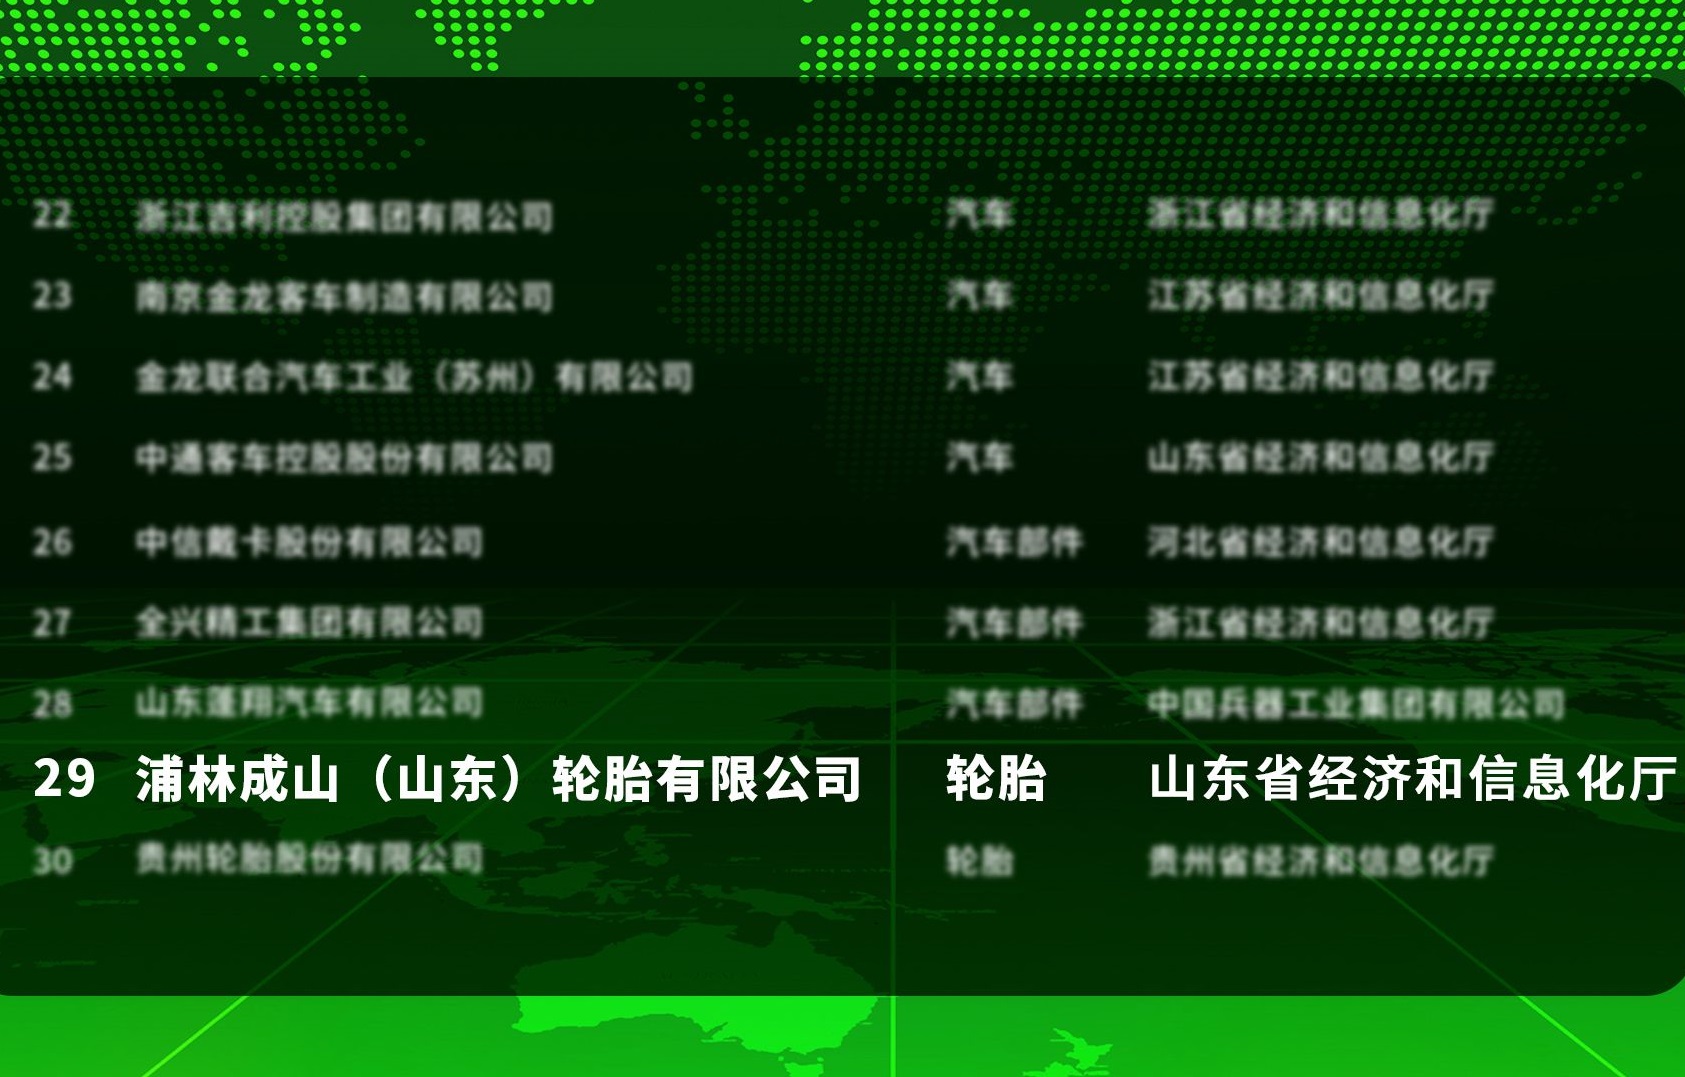 浦林成山入选工业产品绿色设计示范企业名单